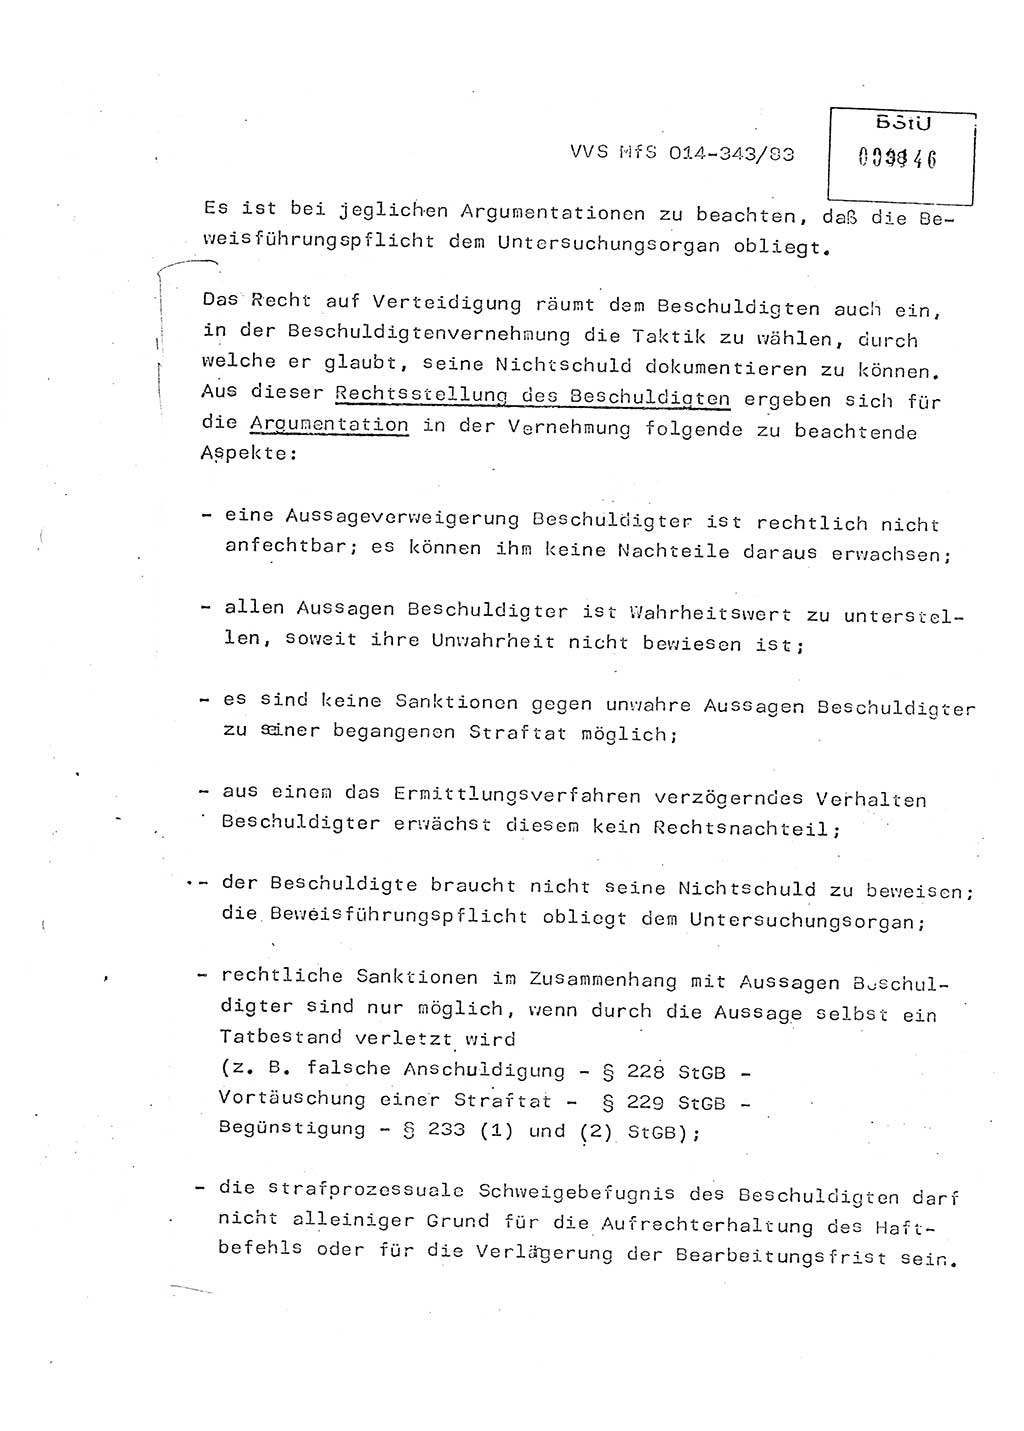 Lektion Ministerium für Staatssicherheit (MfS) [Deutsche Demokratische Republik (DDR)], Hauptabteilung (HA) Ⅸ, Vertrauliche Verschlußsache (VVS) o014-343/83, Berlin 1983, Seite 38 (Lekt. MfS DDR HA Ⅸ VVS o014-343/83 1983, S. 38)